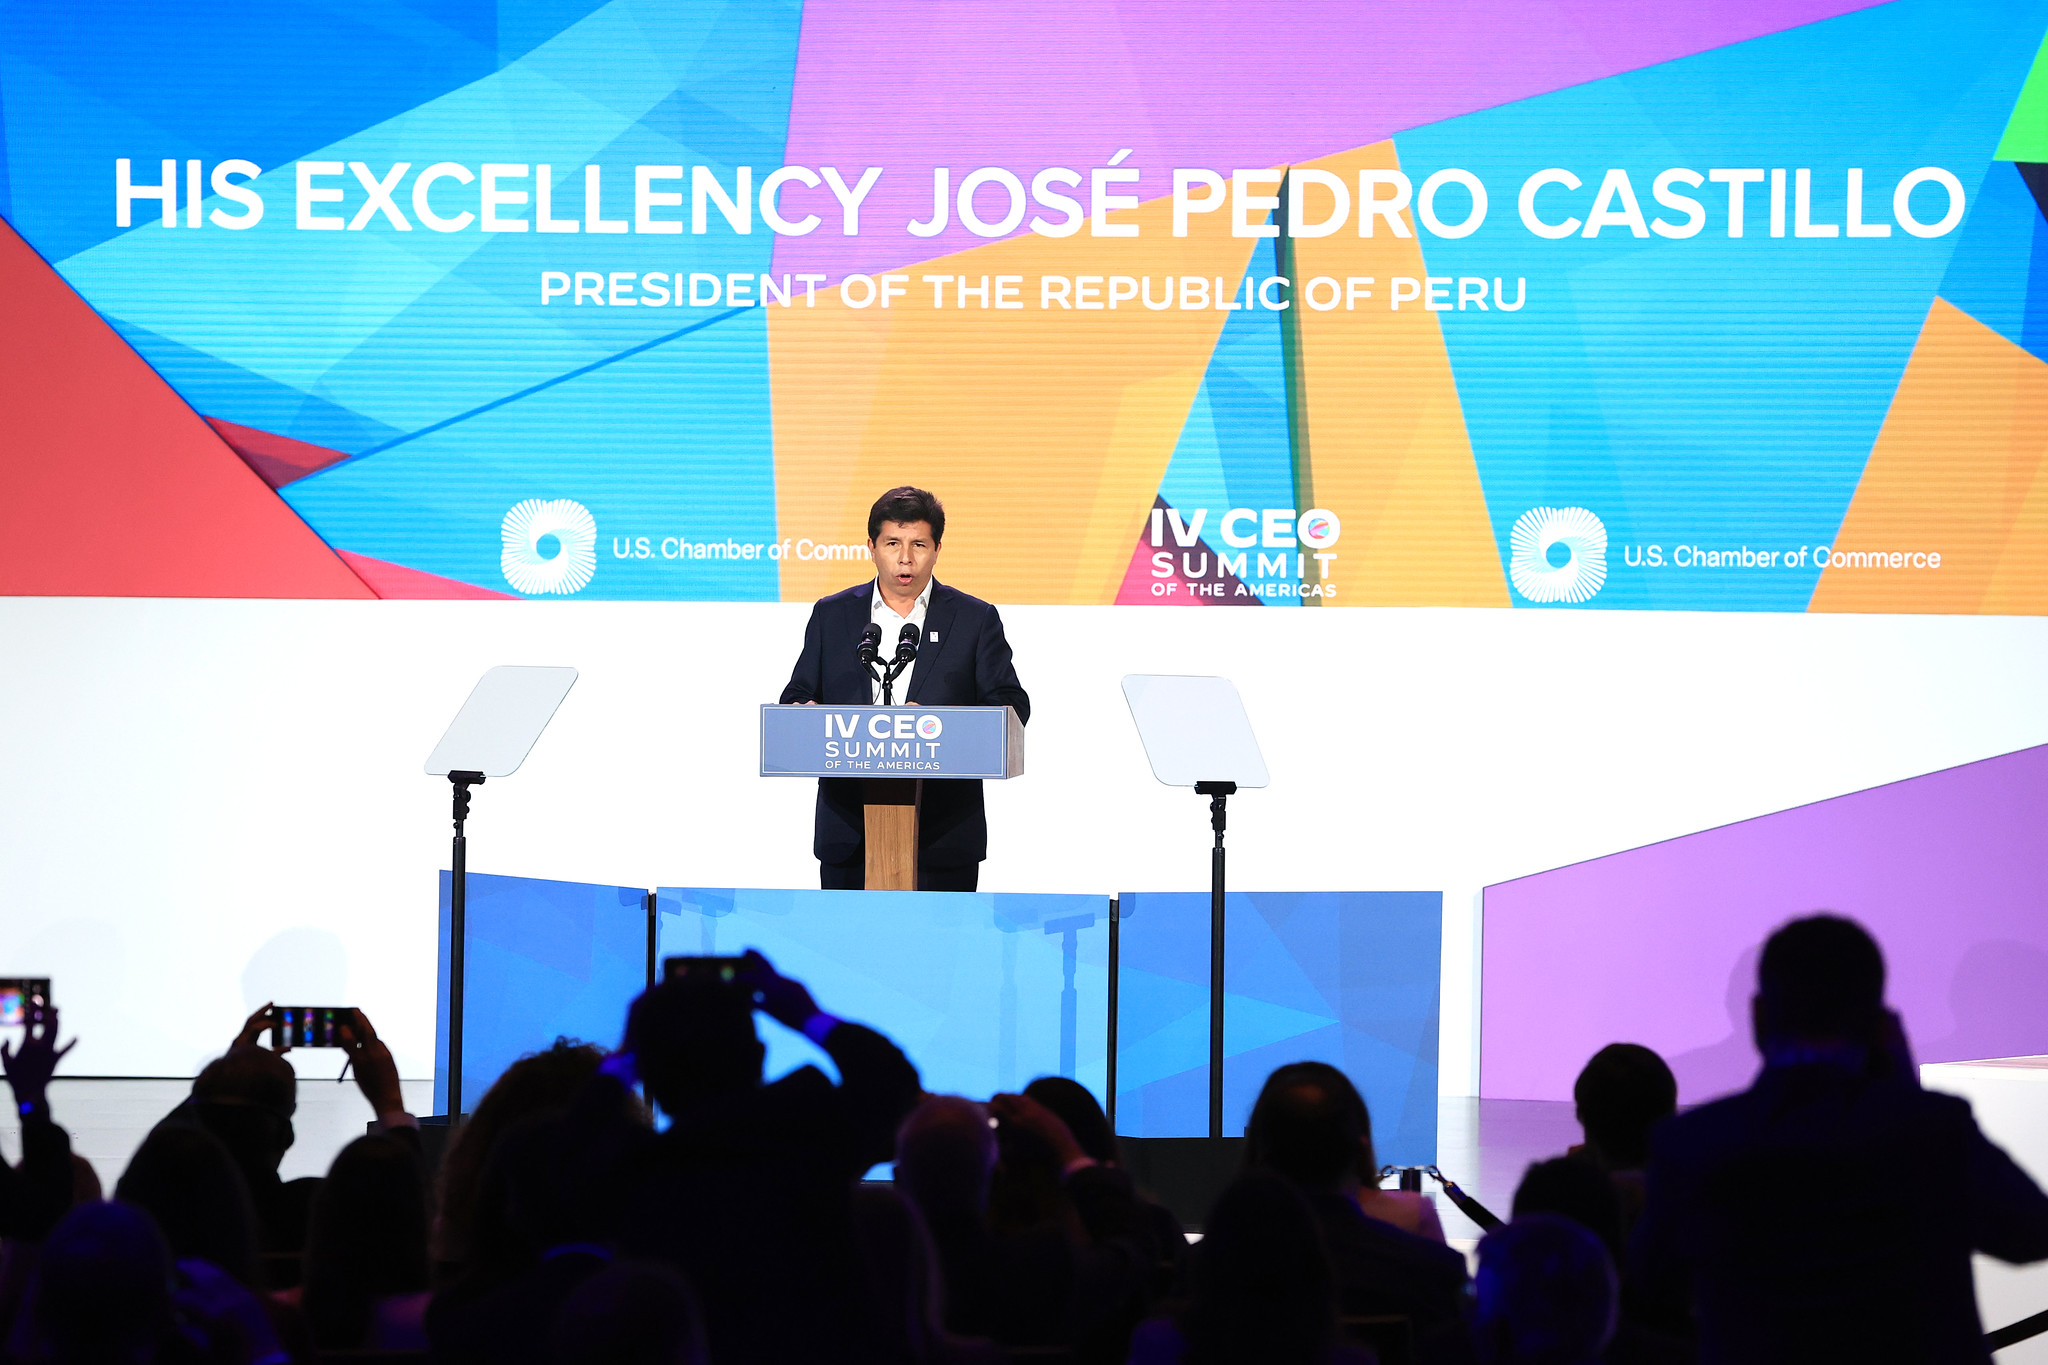 PERÚ: Presidente Castillo acudirá a VI Foro de los Jóvenes de las Américas y a Sesión Plenaria de Líderes en segundo día de Cumbre de las Américas